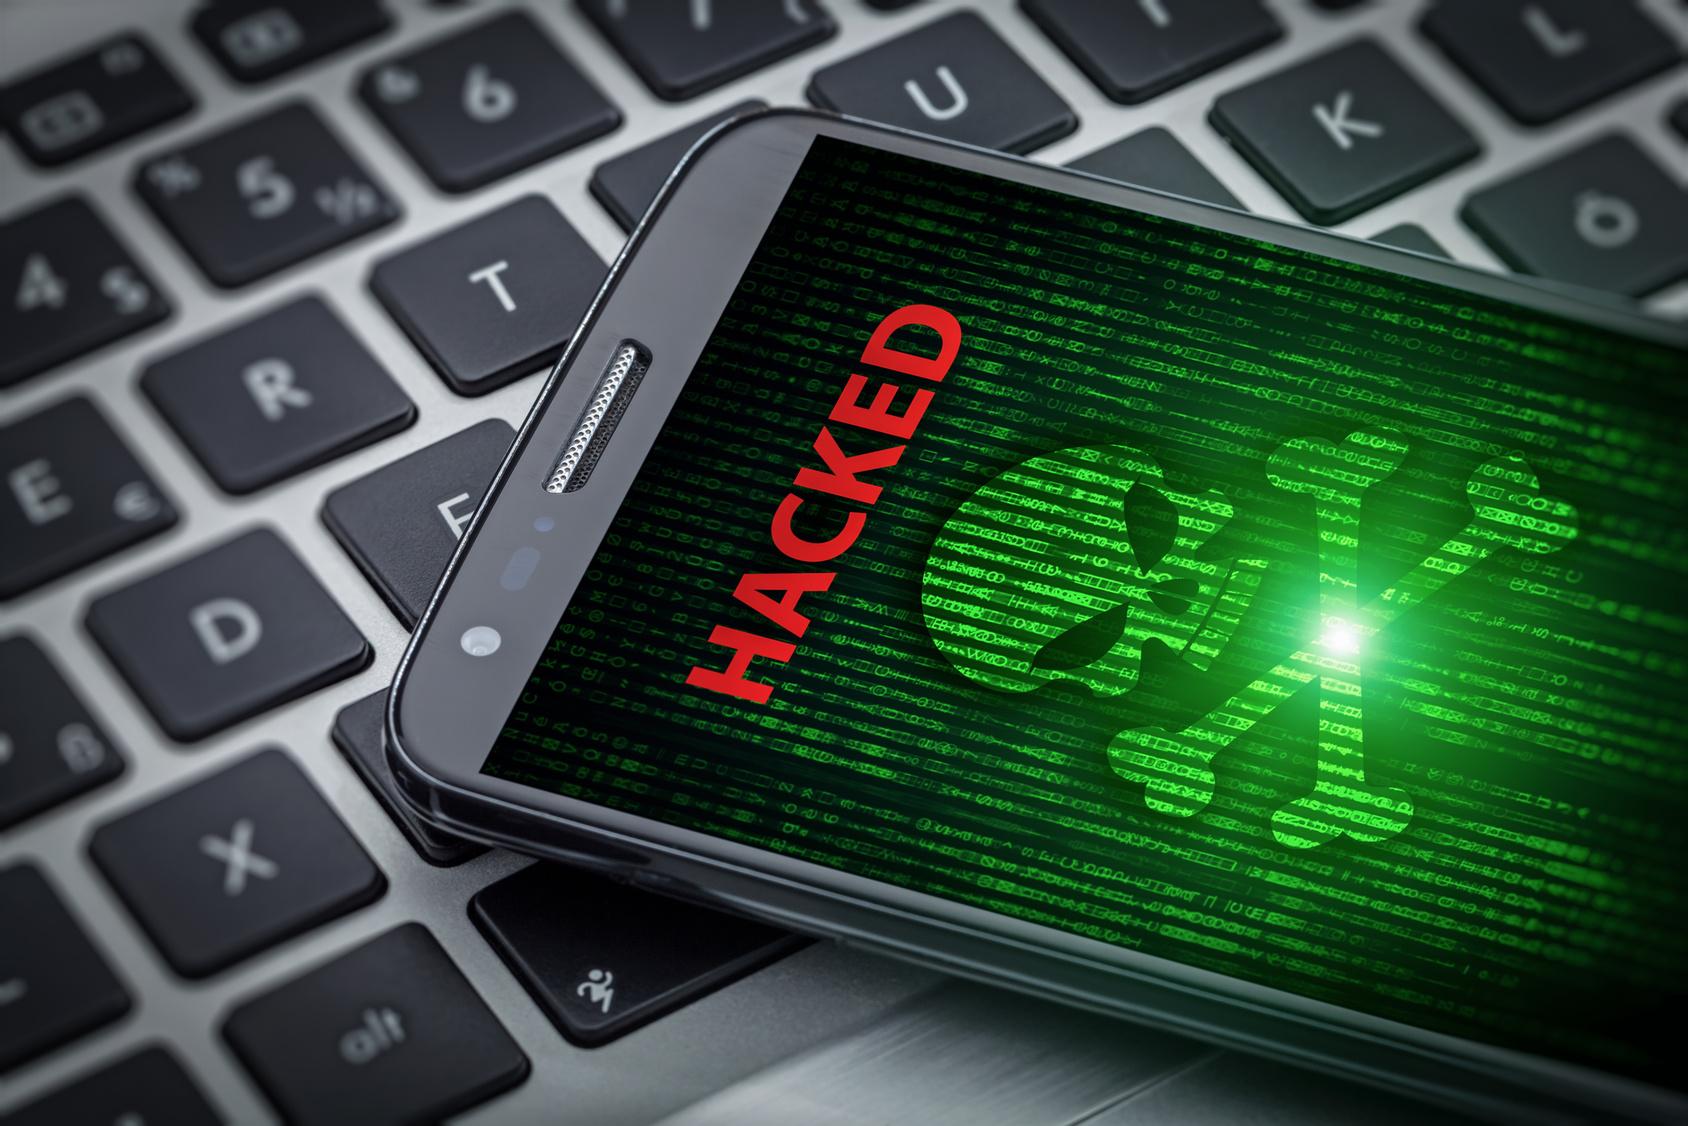 Старый троянский вирус вернулся в строй и атакует российских пользователей Android